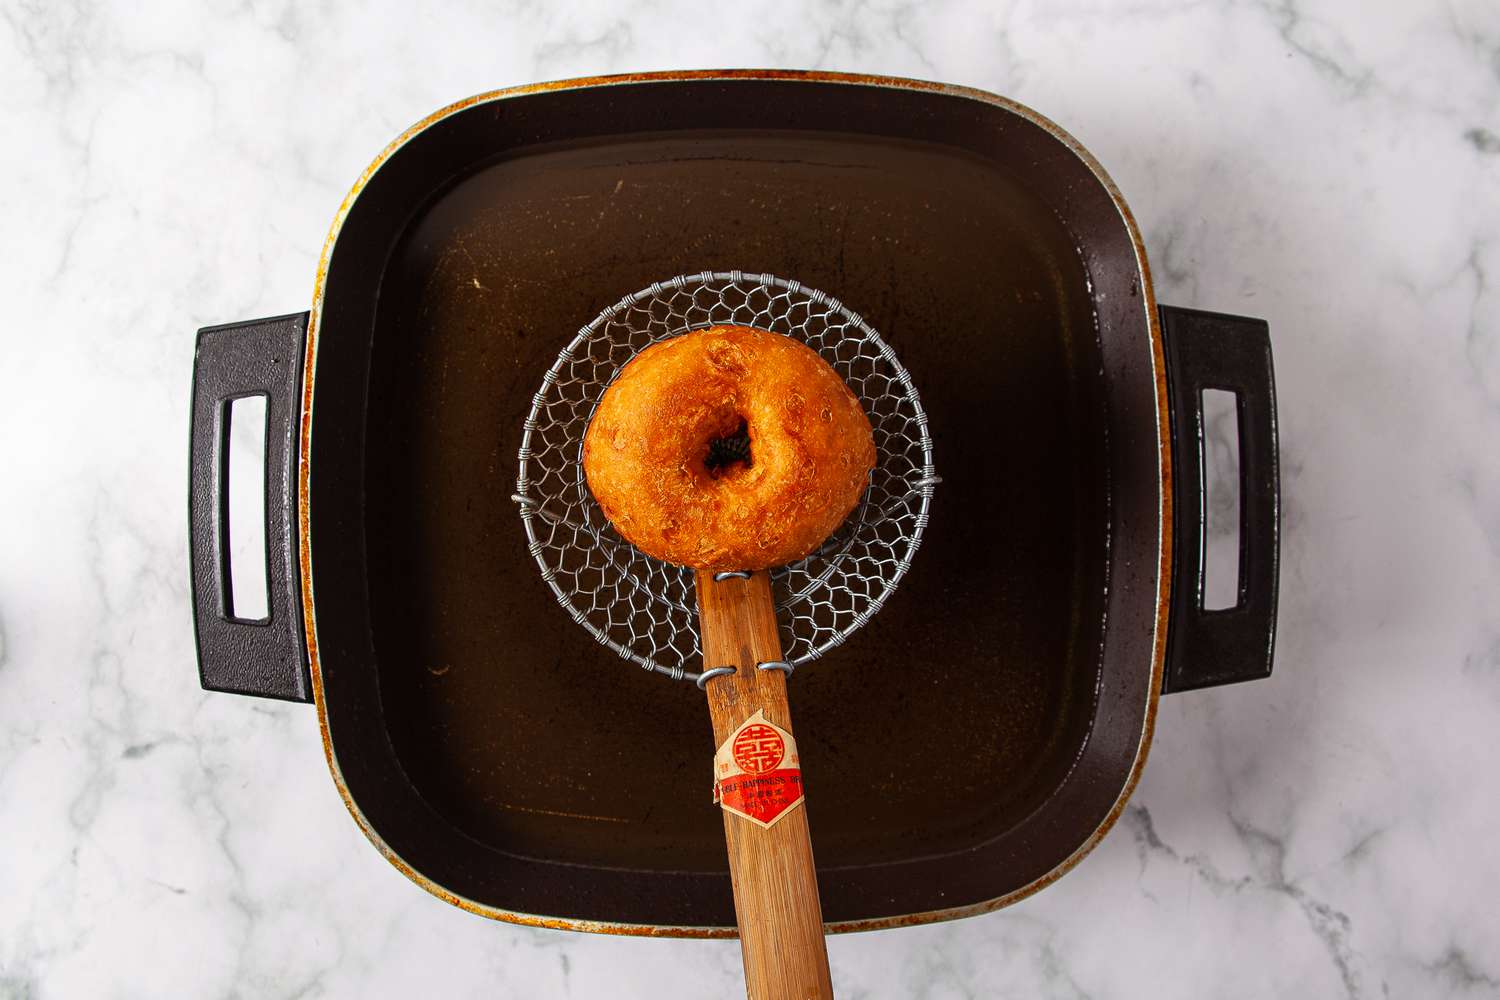 Fried doughnut draining over hot oil